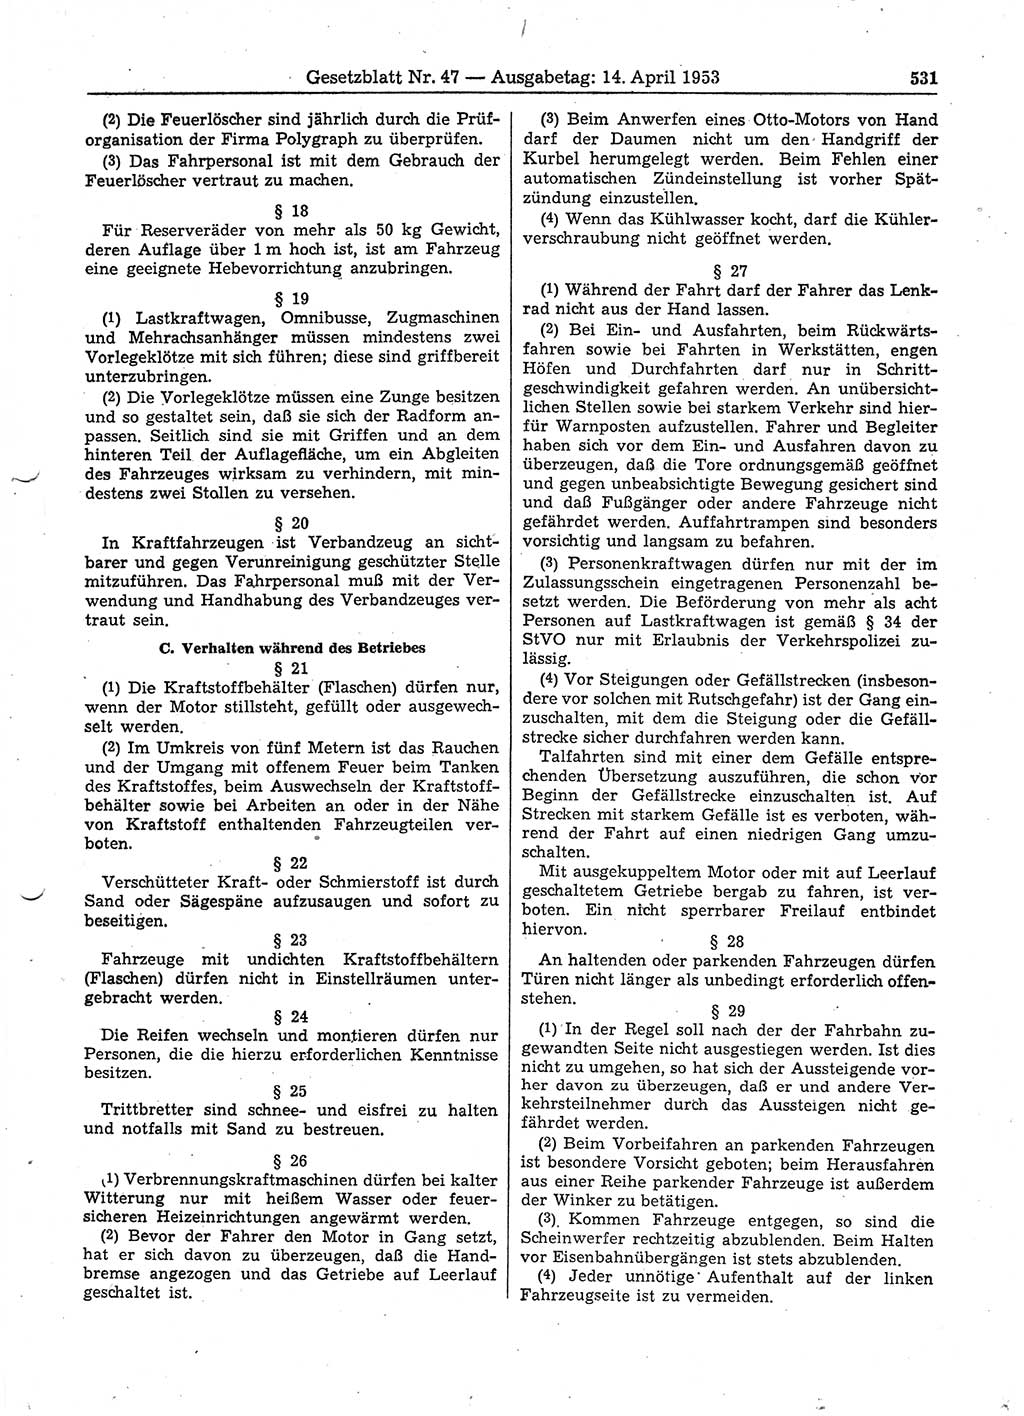 Gesetzblatt (GBl.) der Deutschen Demokratischen Republik (DDR) 1953, Seite 531 (GBl. DDR 1953, S. 531)